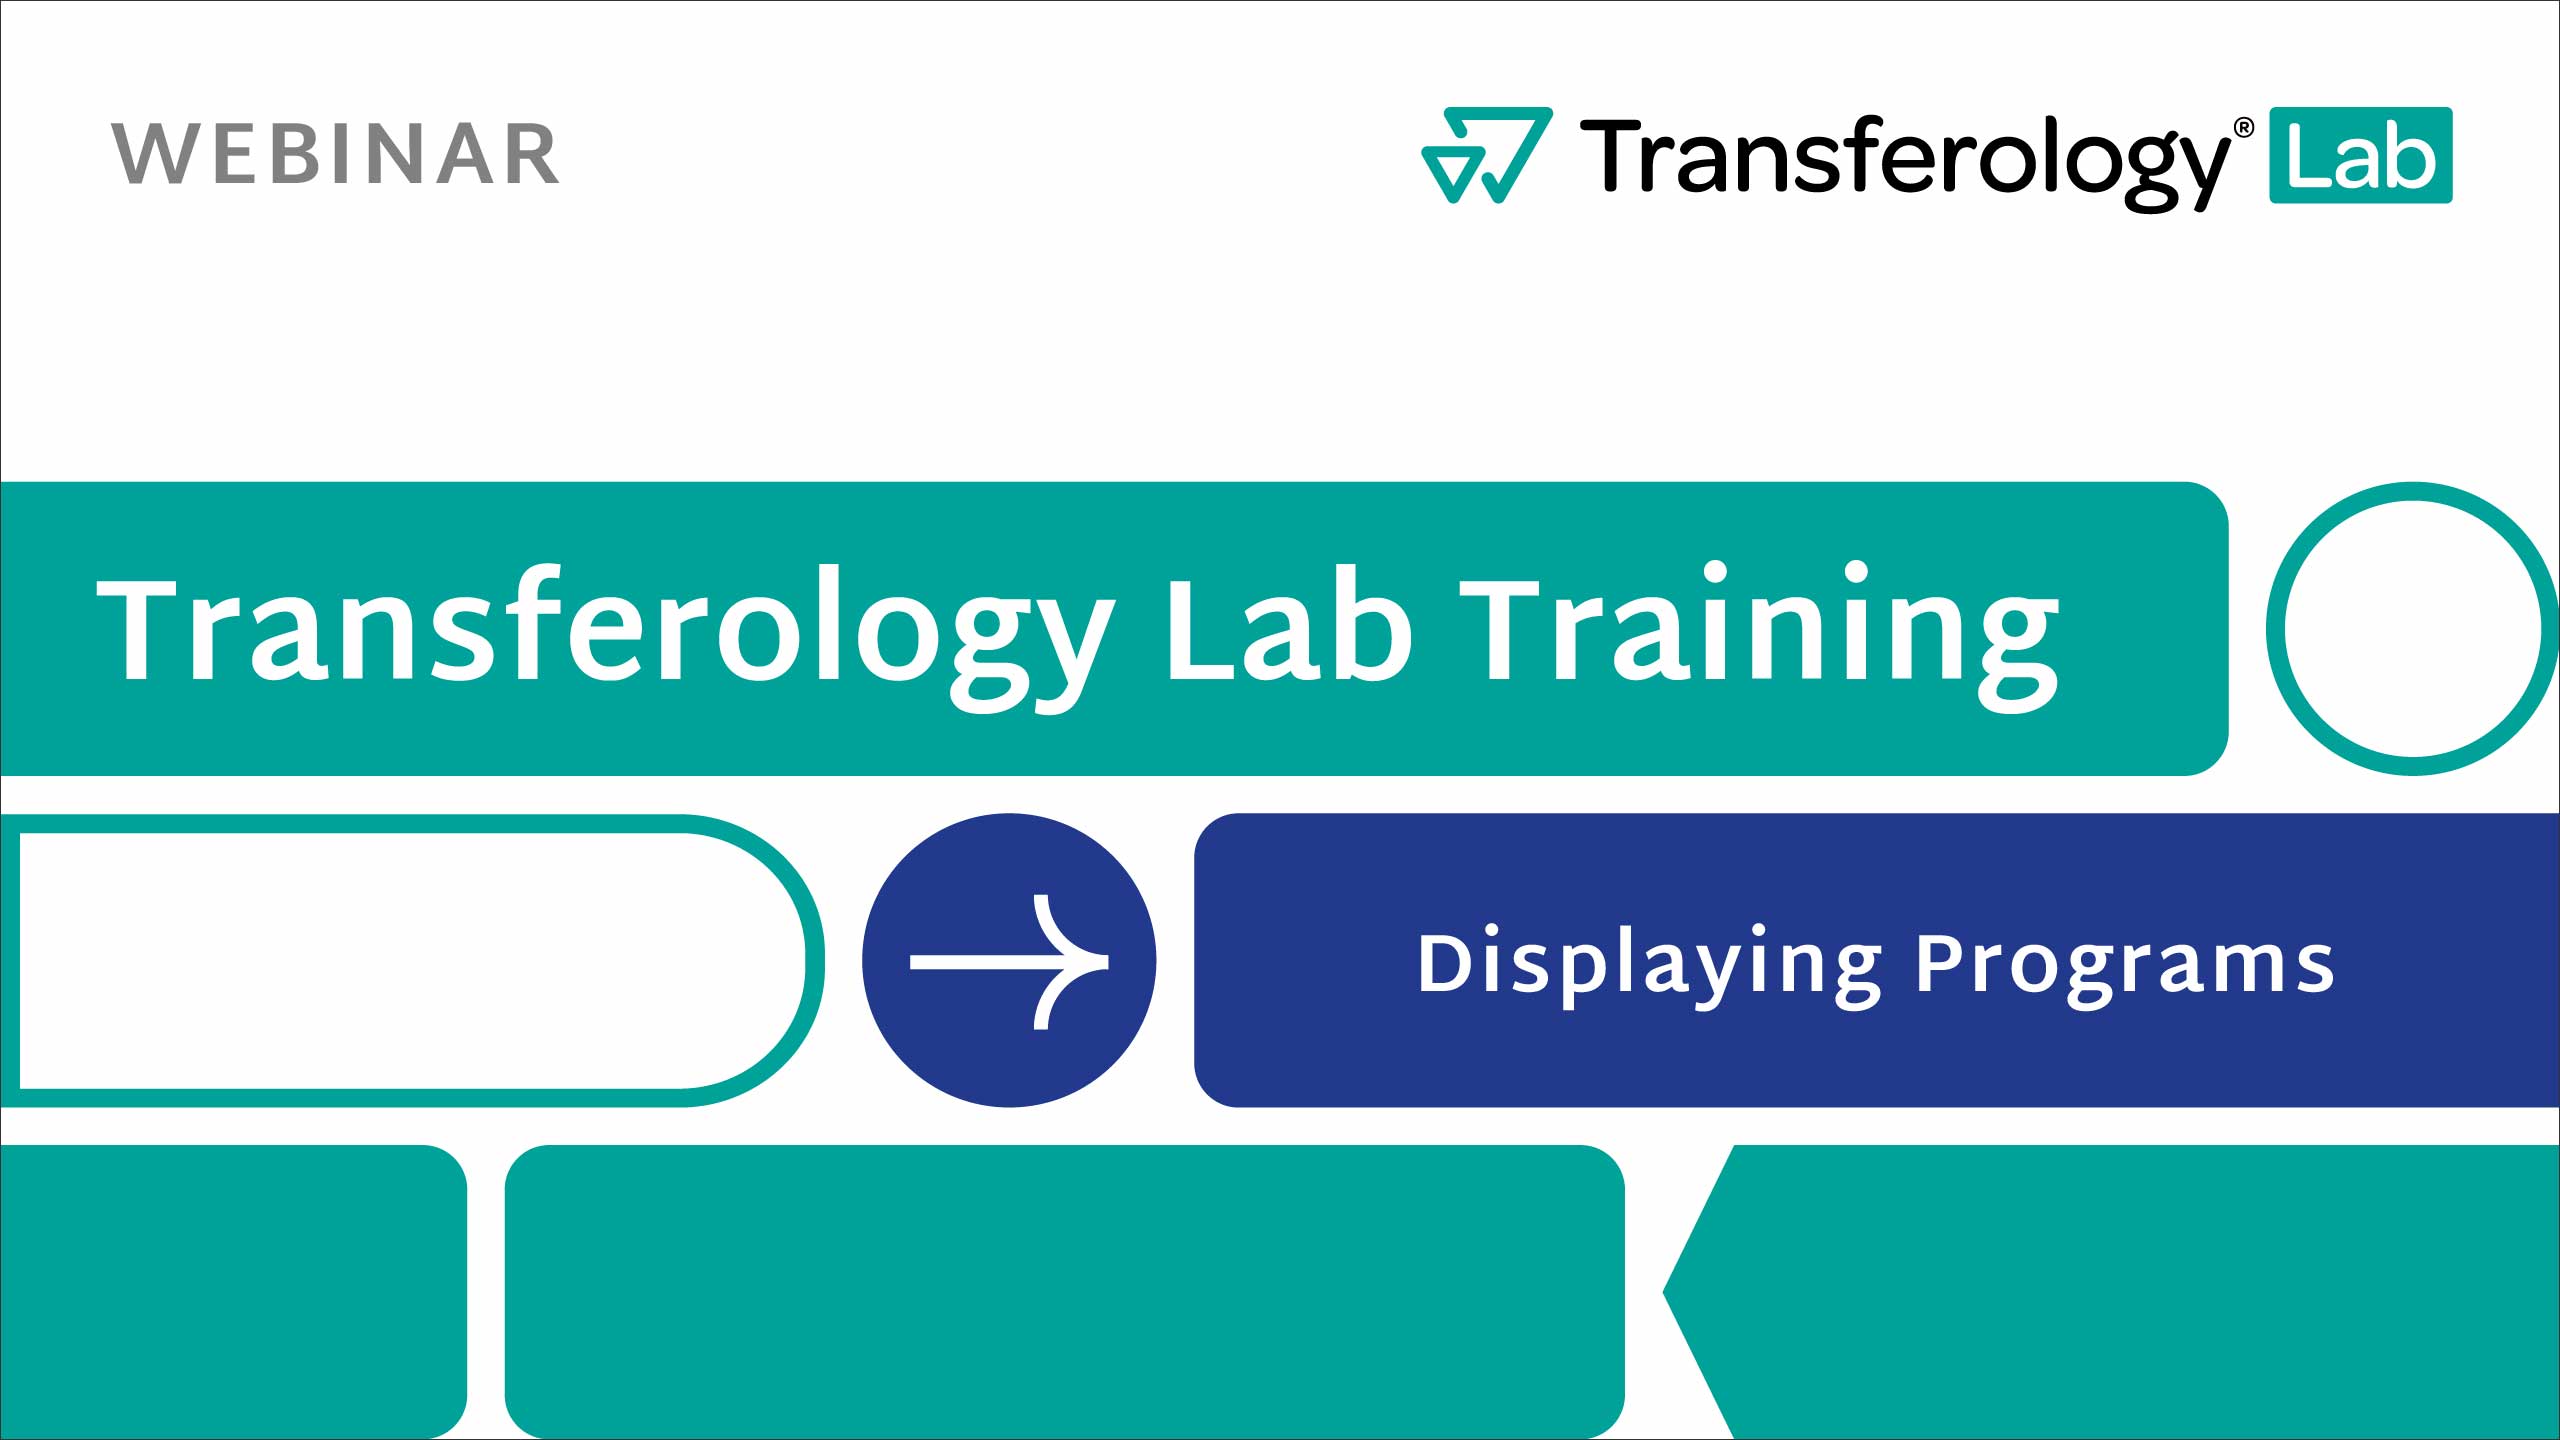 Transferology Lab Displaying Programs